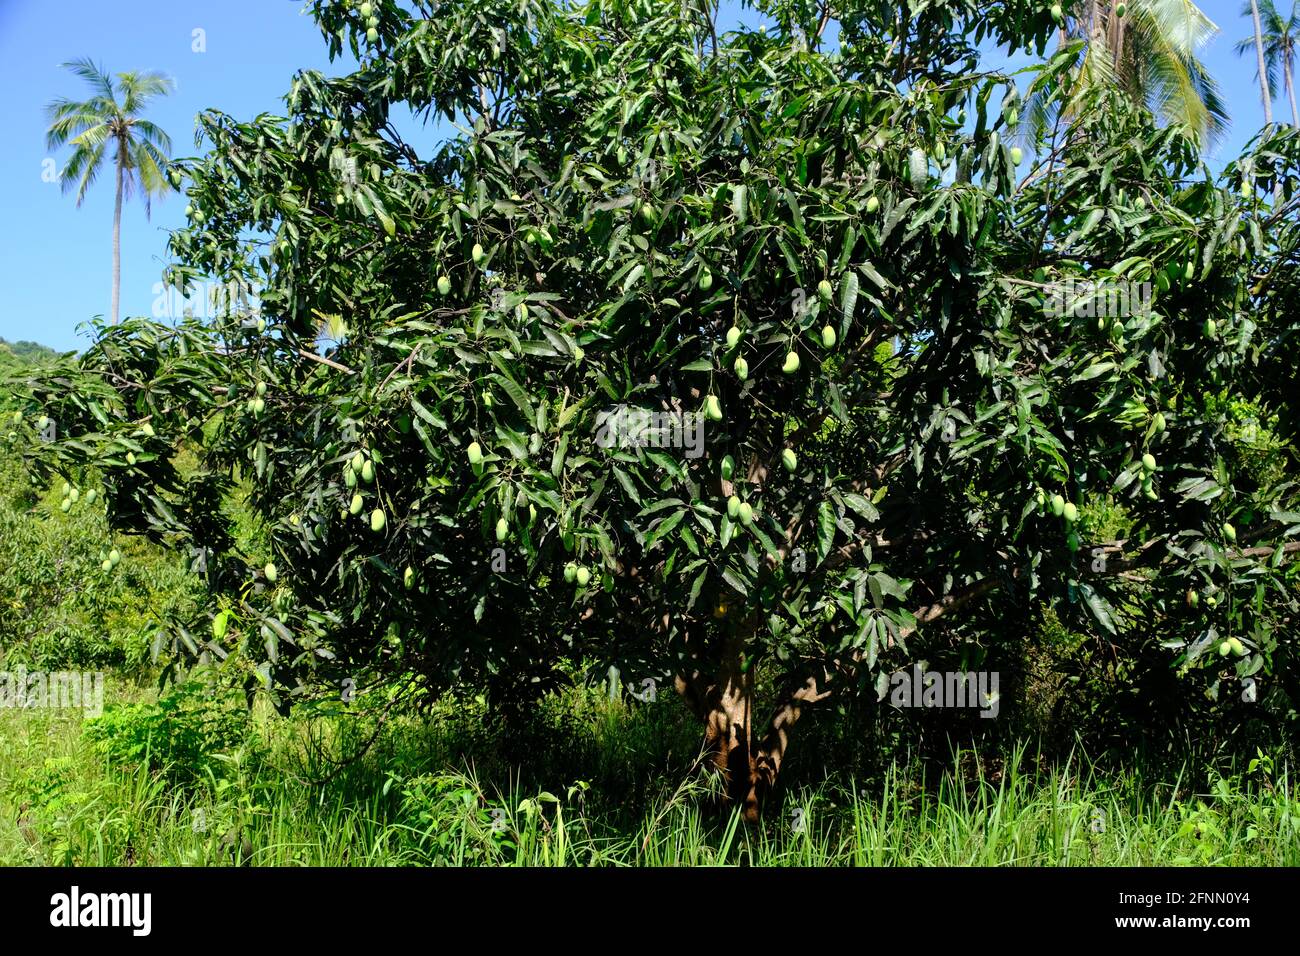 Indonesien Anambas-Inseln - Mangobaum mit Früchten - Mangifera indica Stockfoto